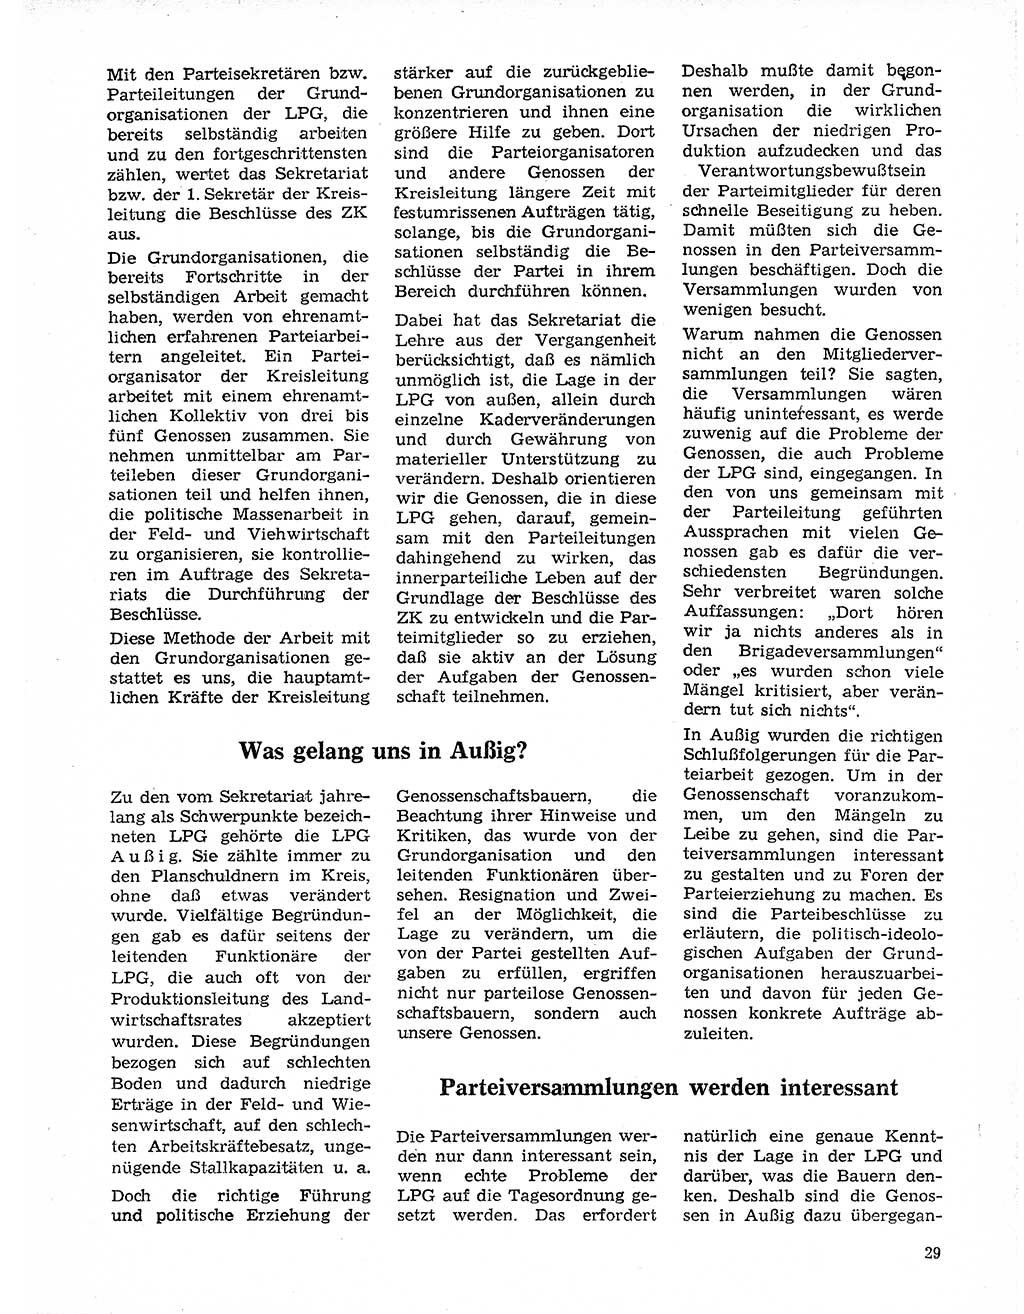 Neuer Weg (NW), Organ des Zentralkomitees (ZK) der SED (Sozialistische Einheitspartei Deutschlands) für Fragen des Parteilebens, 20. Jahrgang [Deutsche Demokratische Republik (DDR)] 1965, Seite 29 (NW ZK SED DDR 1965, S. 29)